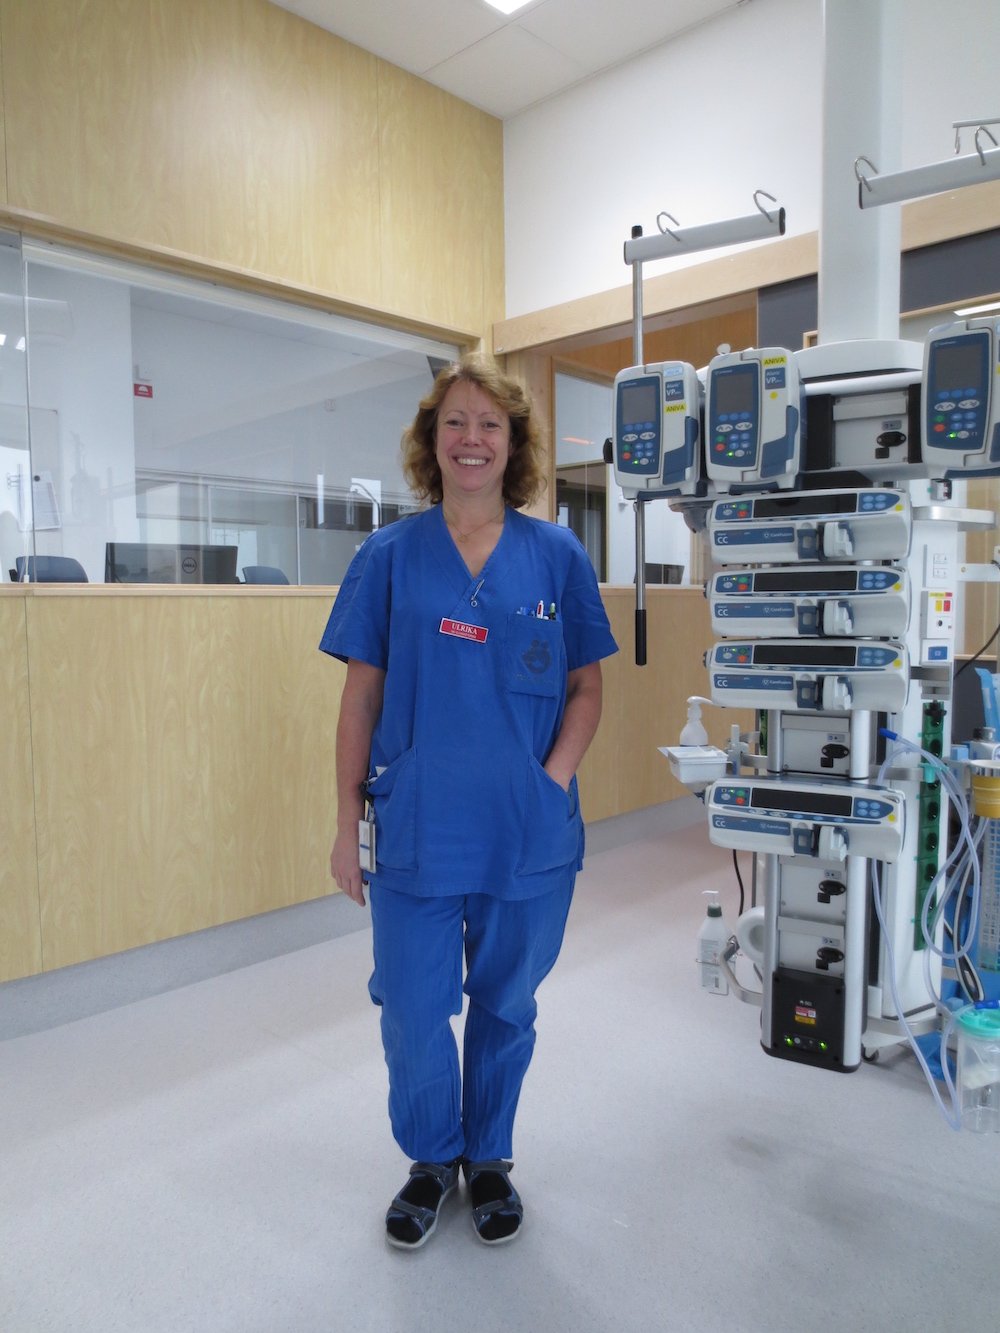 Ulrika Thörn, medicinteknisk ansvarlig intensivsygeplejerske på Örebro Universitetssygehus